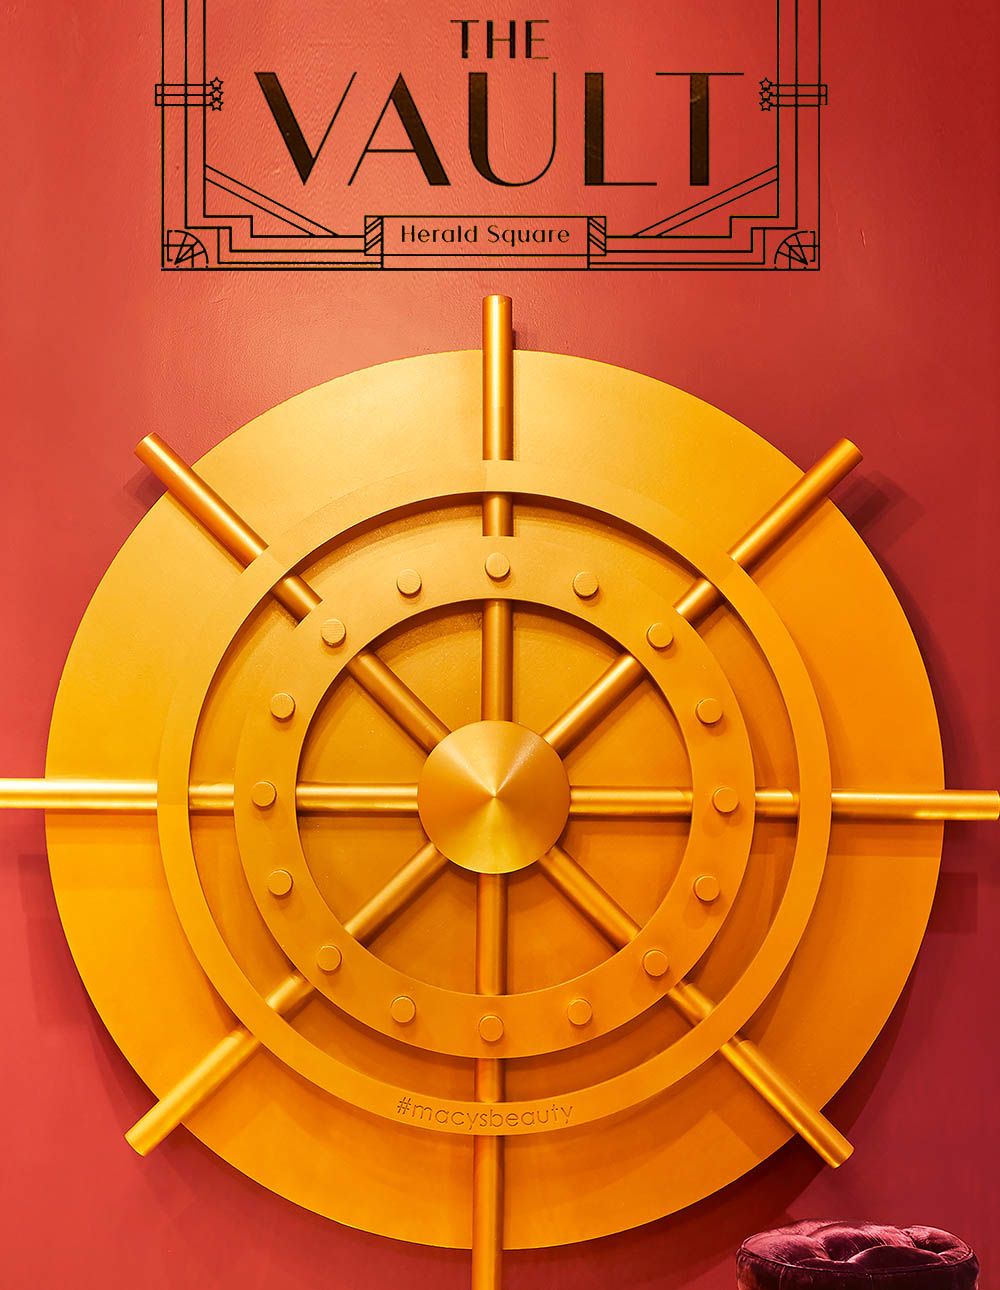 Macy’s “The Vault”